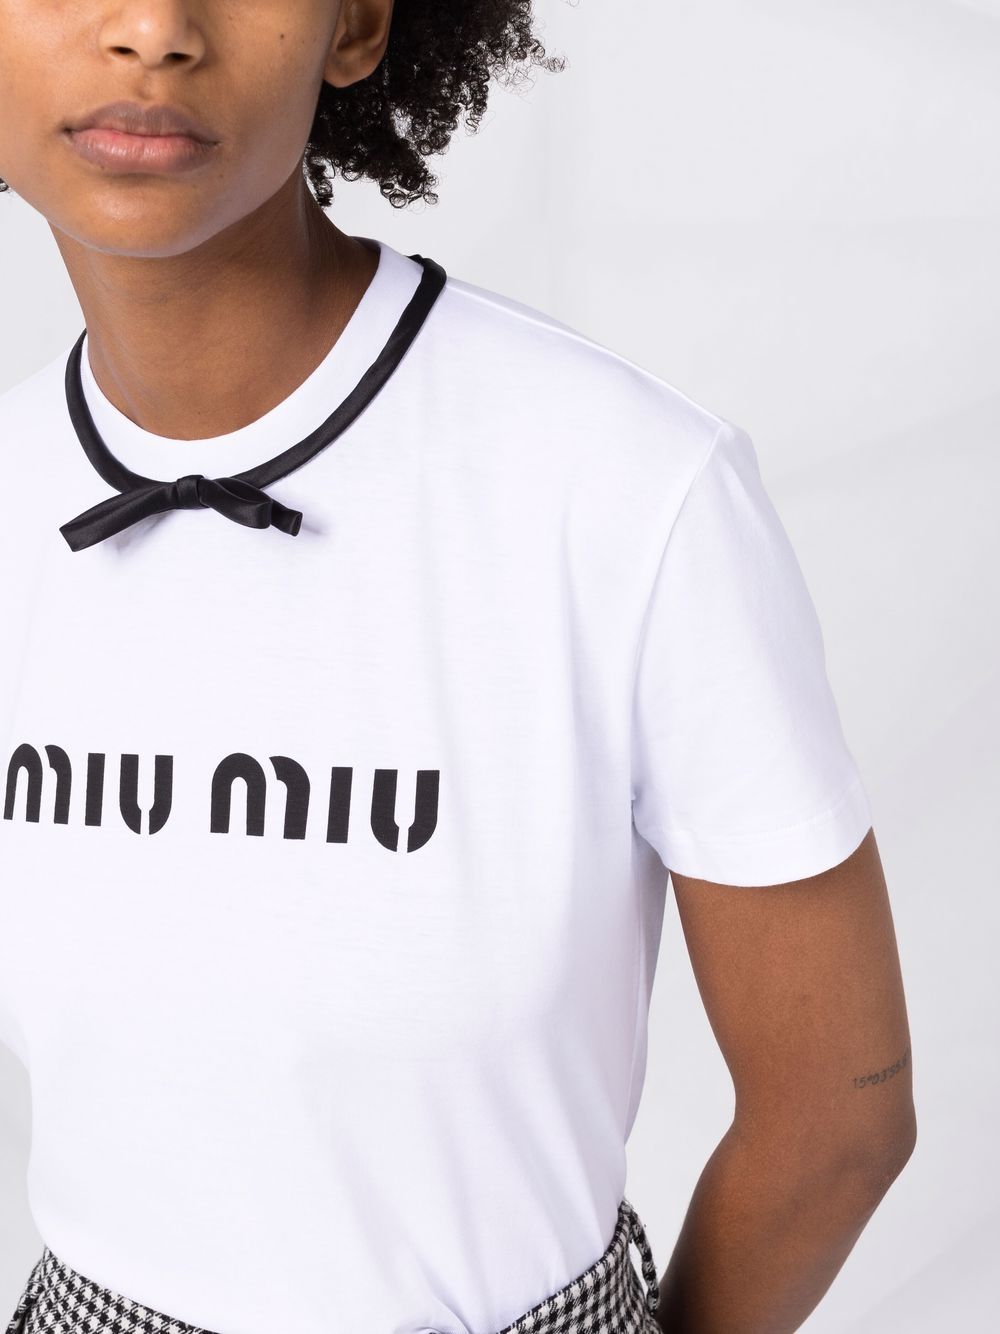 Bow shirt MIU MIU